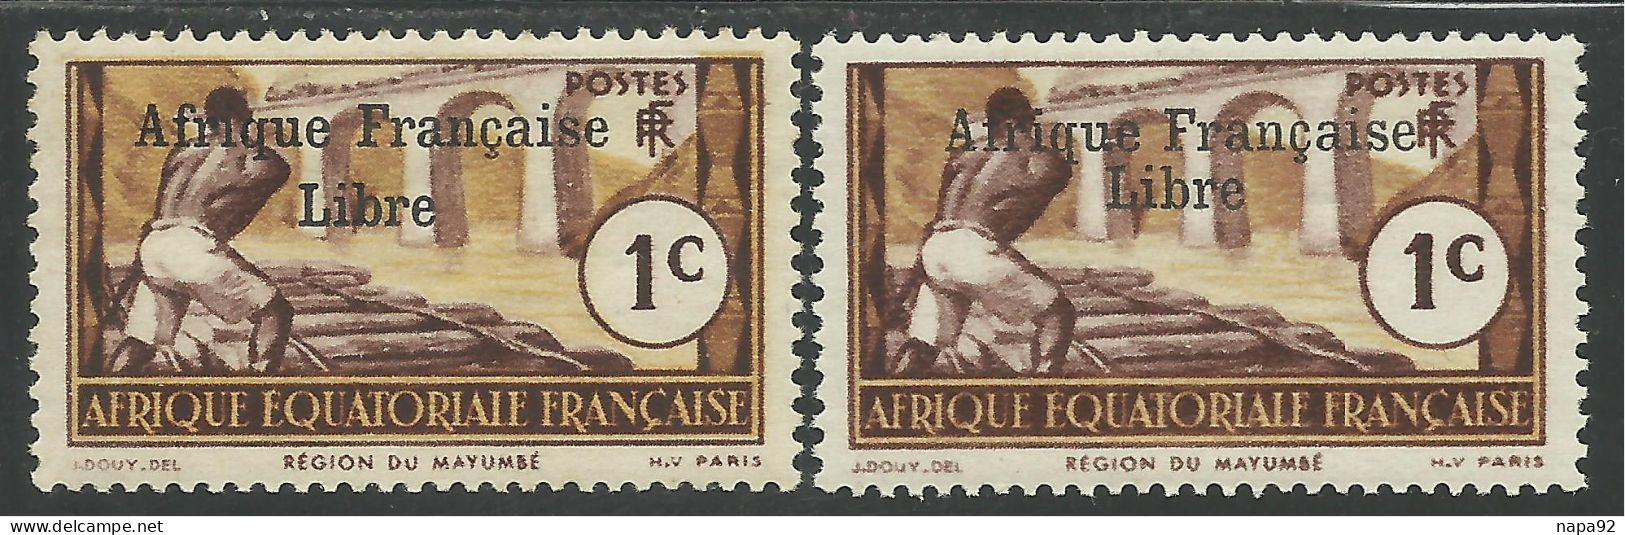 AFRIQUE EQUATORIALE FRANCAISE - AEF - A.E.F. - 1941 - YT 156** - 2ème TIRAGE - Neufs